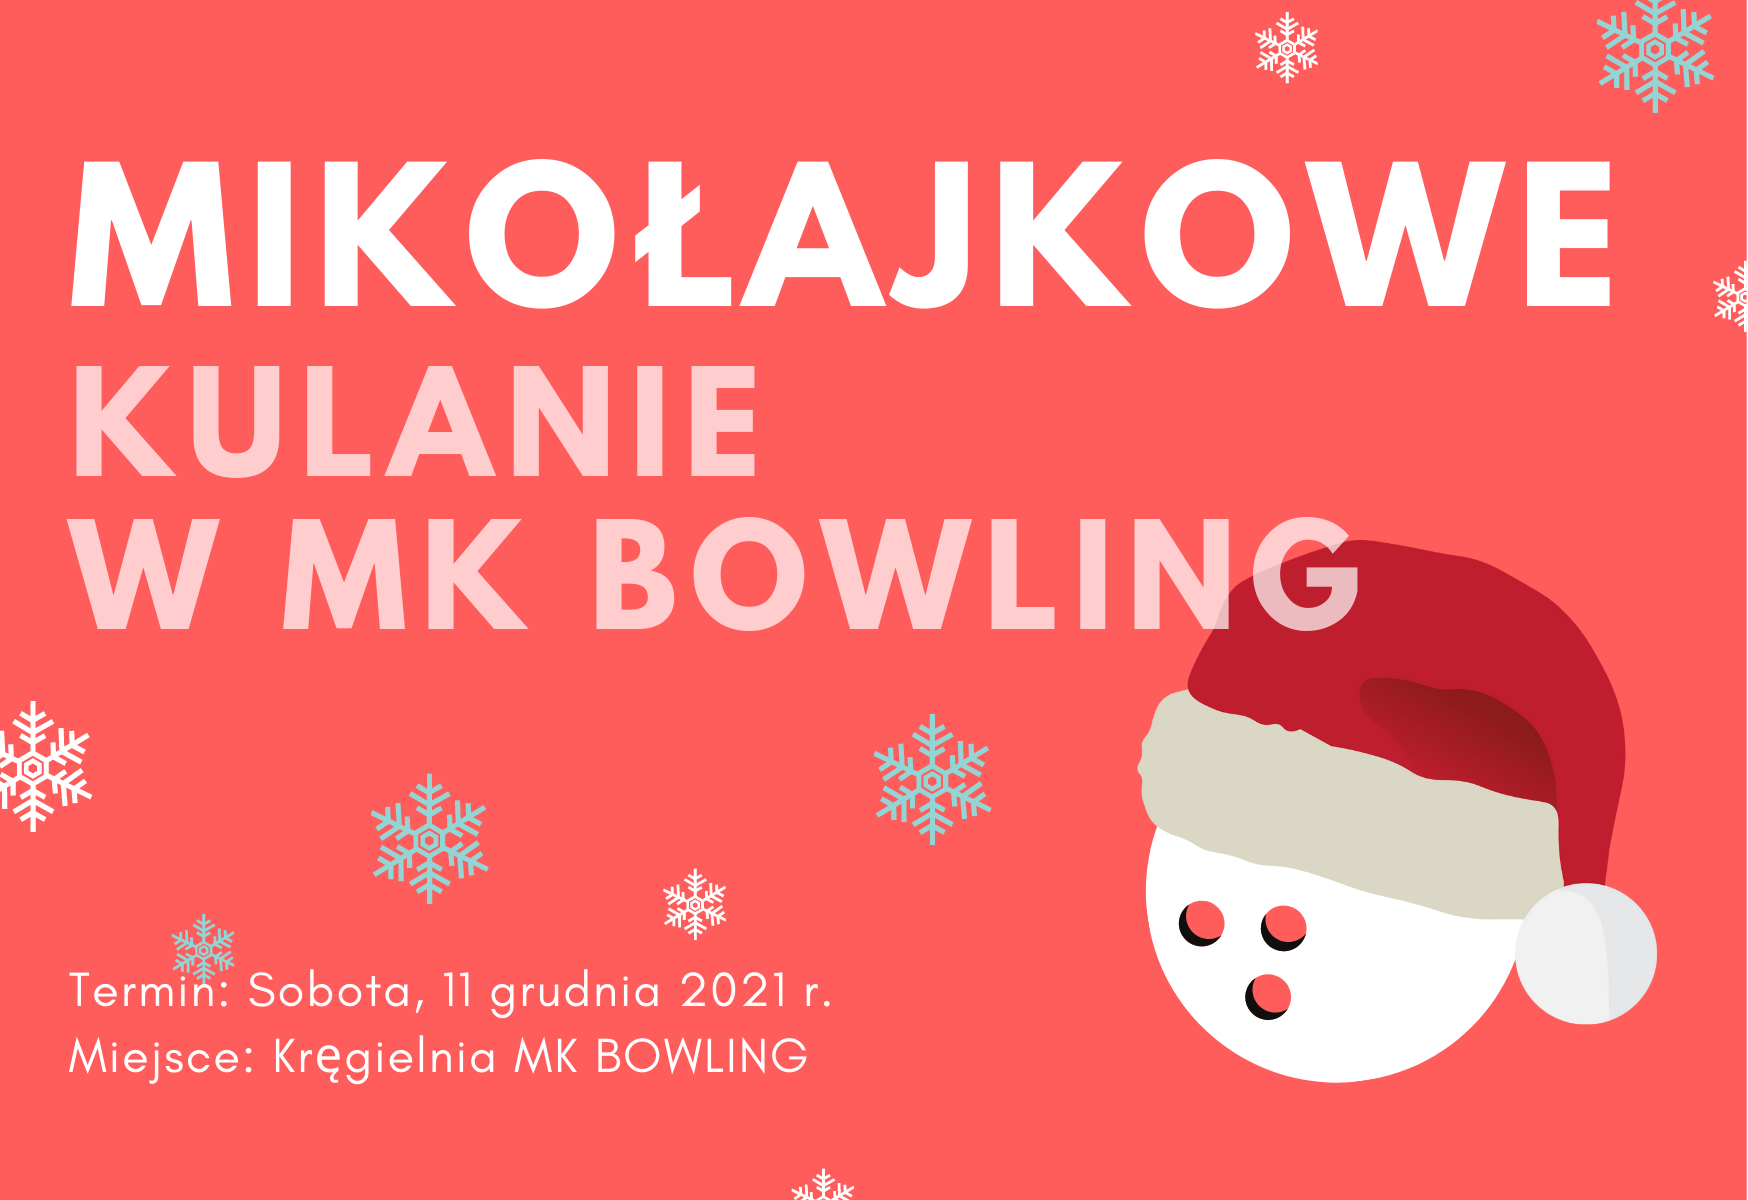 Mikołajkowe Kulanie 2021 w MK BOWLING